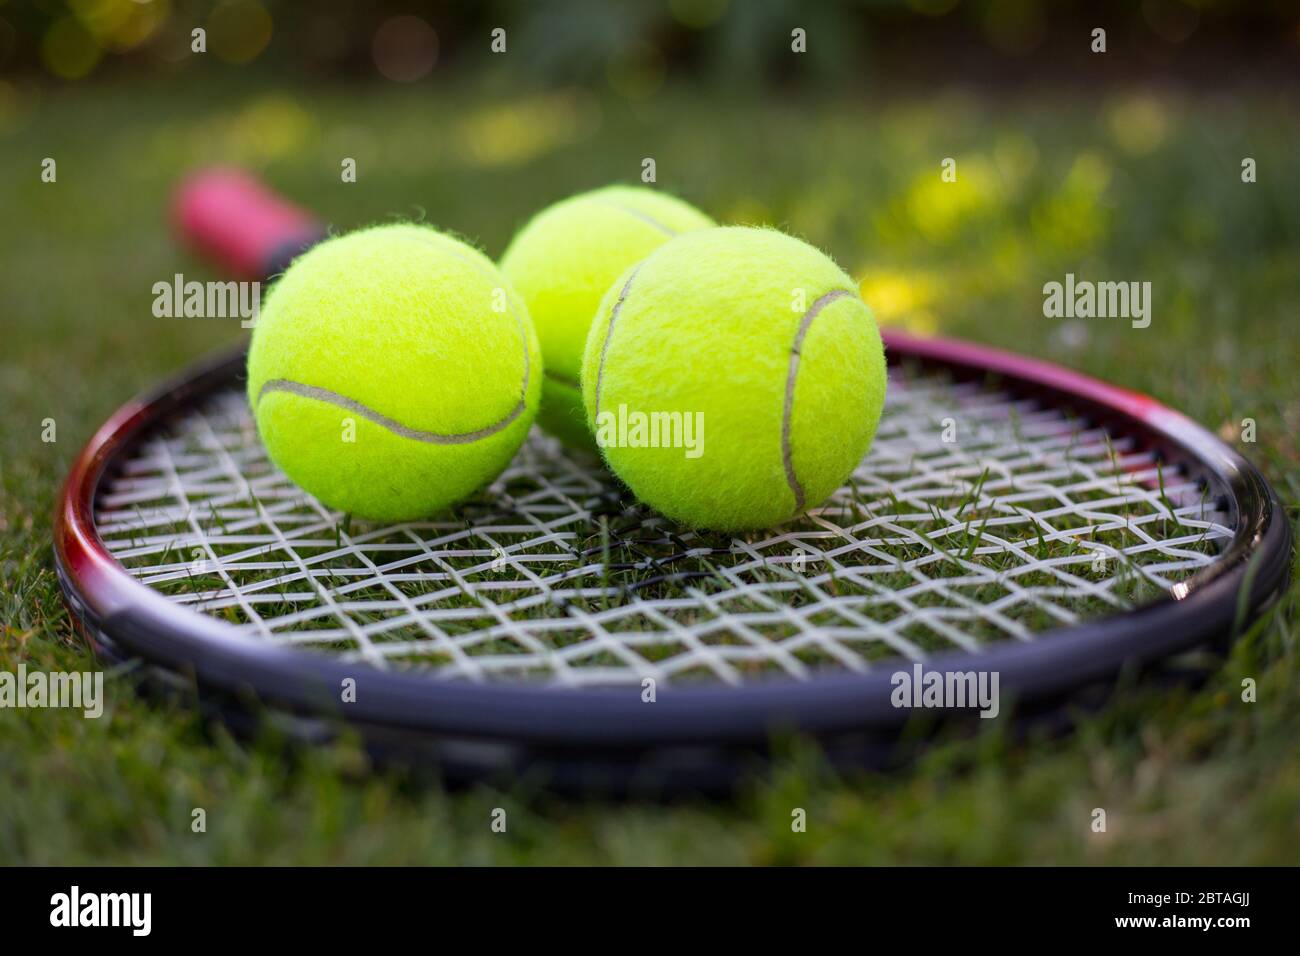 Una racchetta da tennis e tre palle da tennis gialle sull'erba Foto Stock